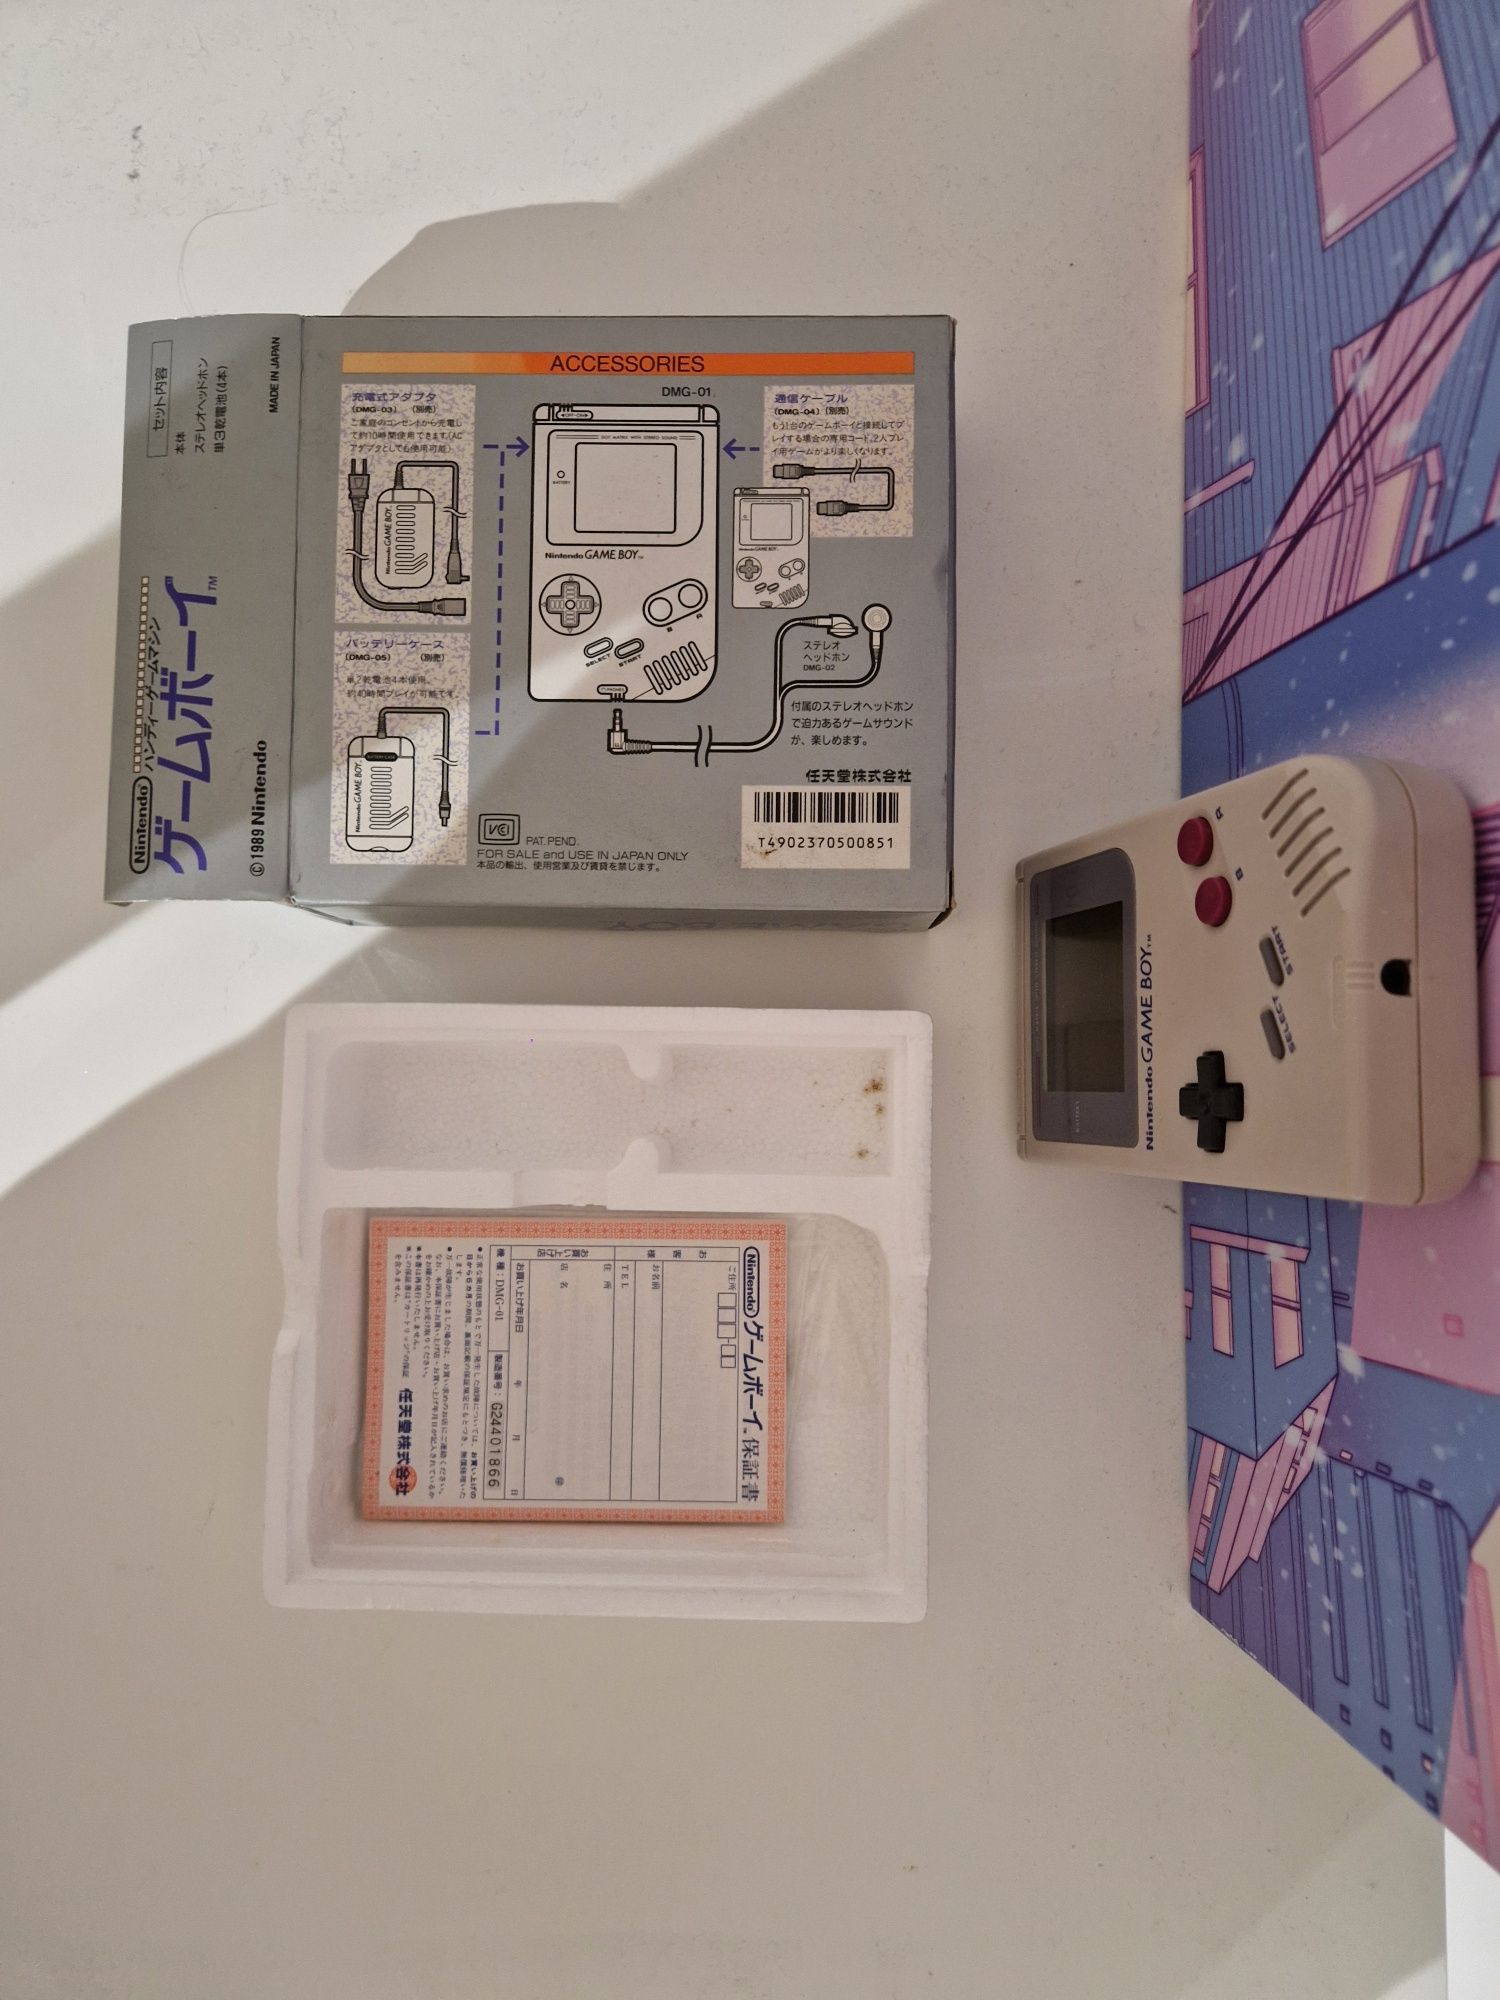 GAMEBOY Original Classic  (zestaw, konsola, sprawna, pudełko)